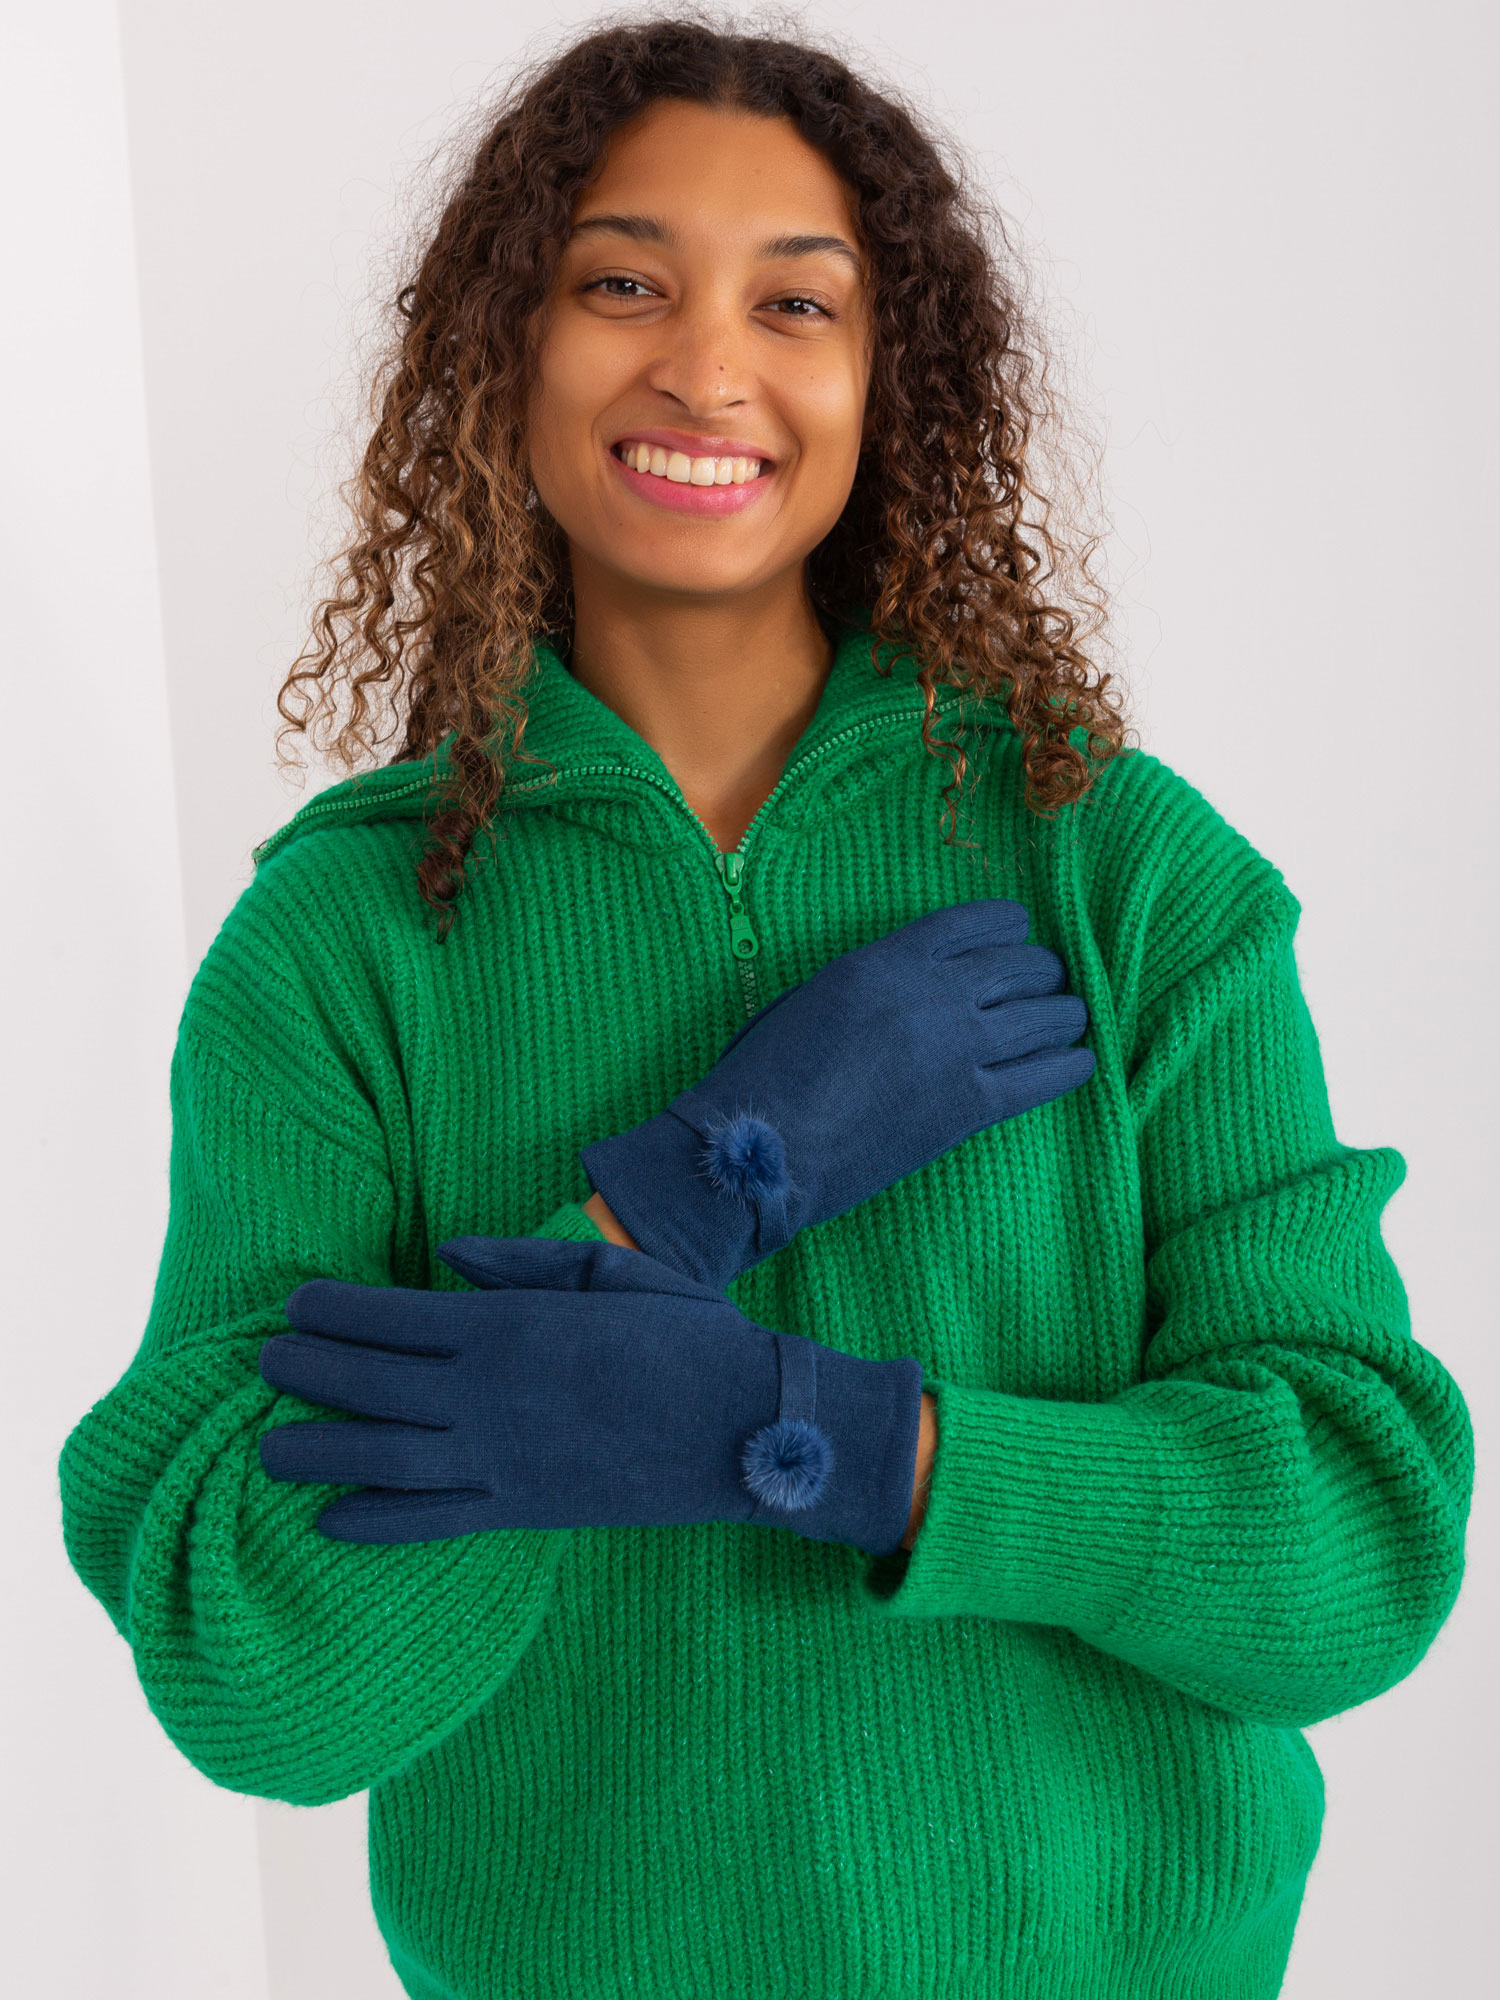 Tmavě modré zimní rukavice s ozdobou AT-RK-23904.27-dark blue Velikost: L/XL